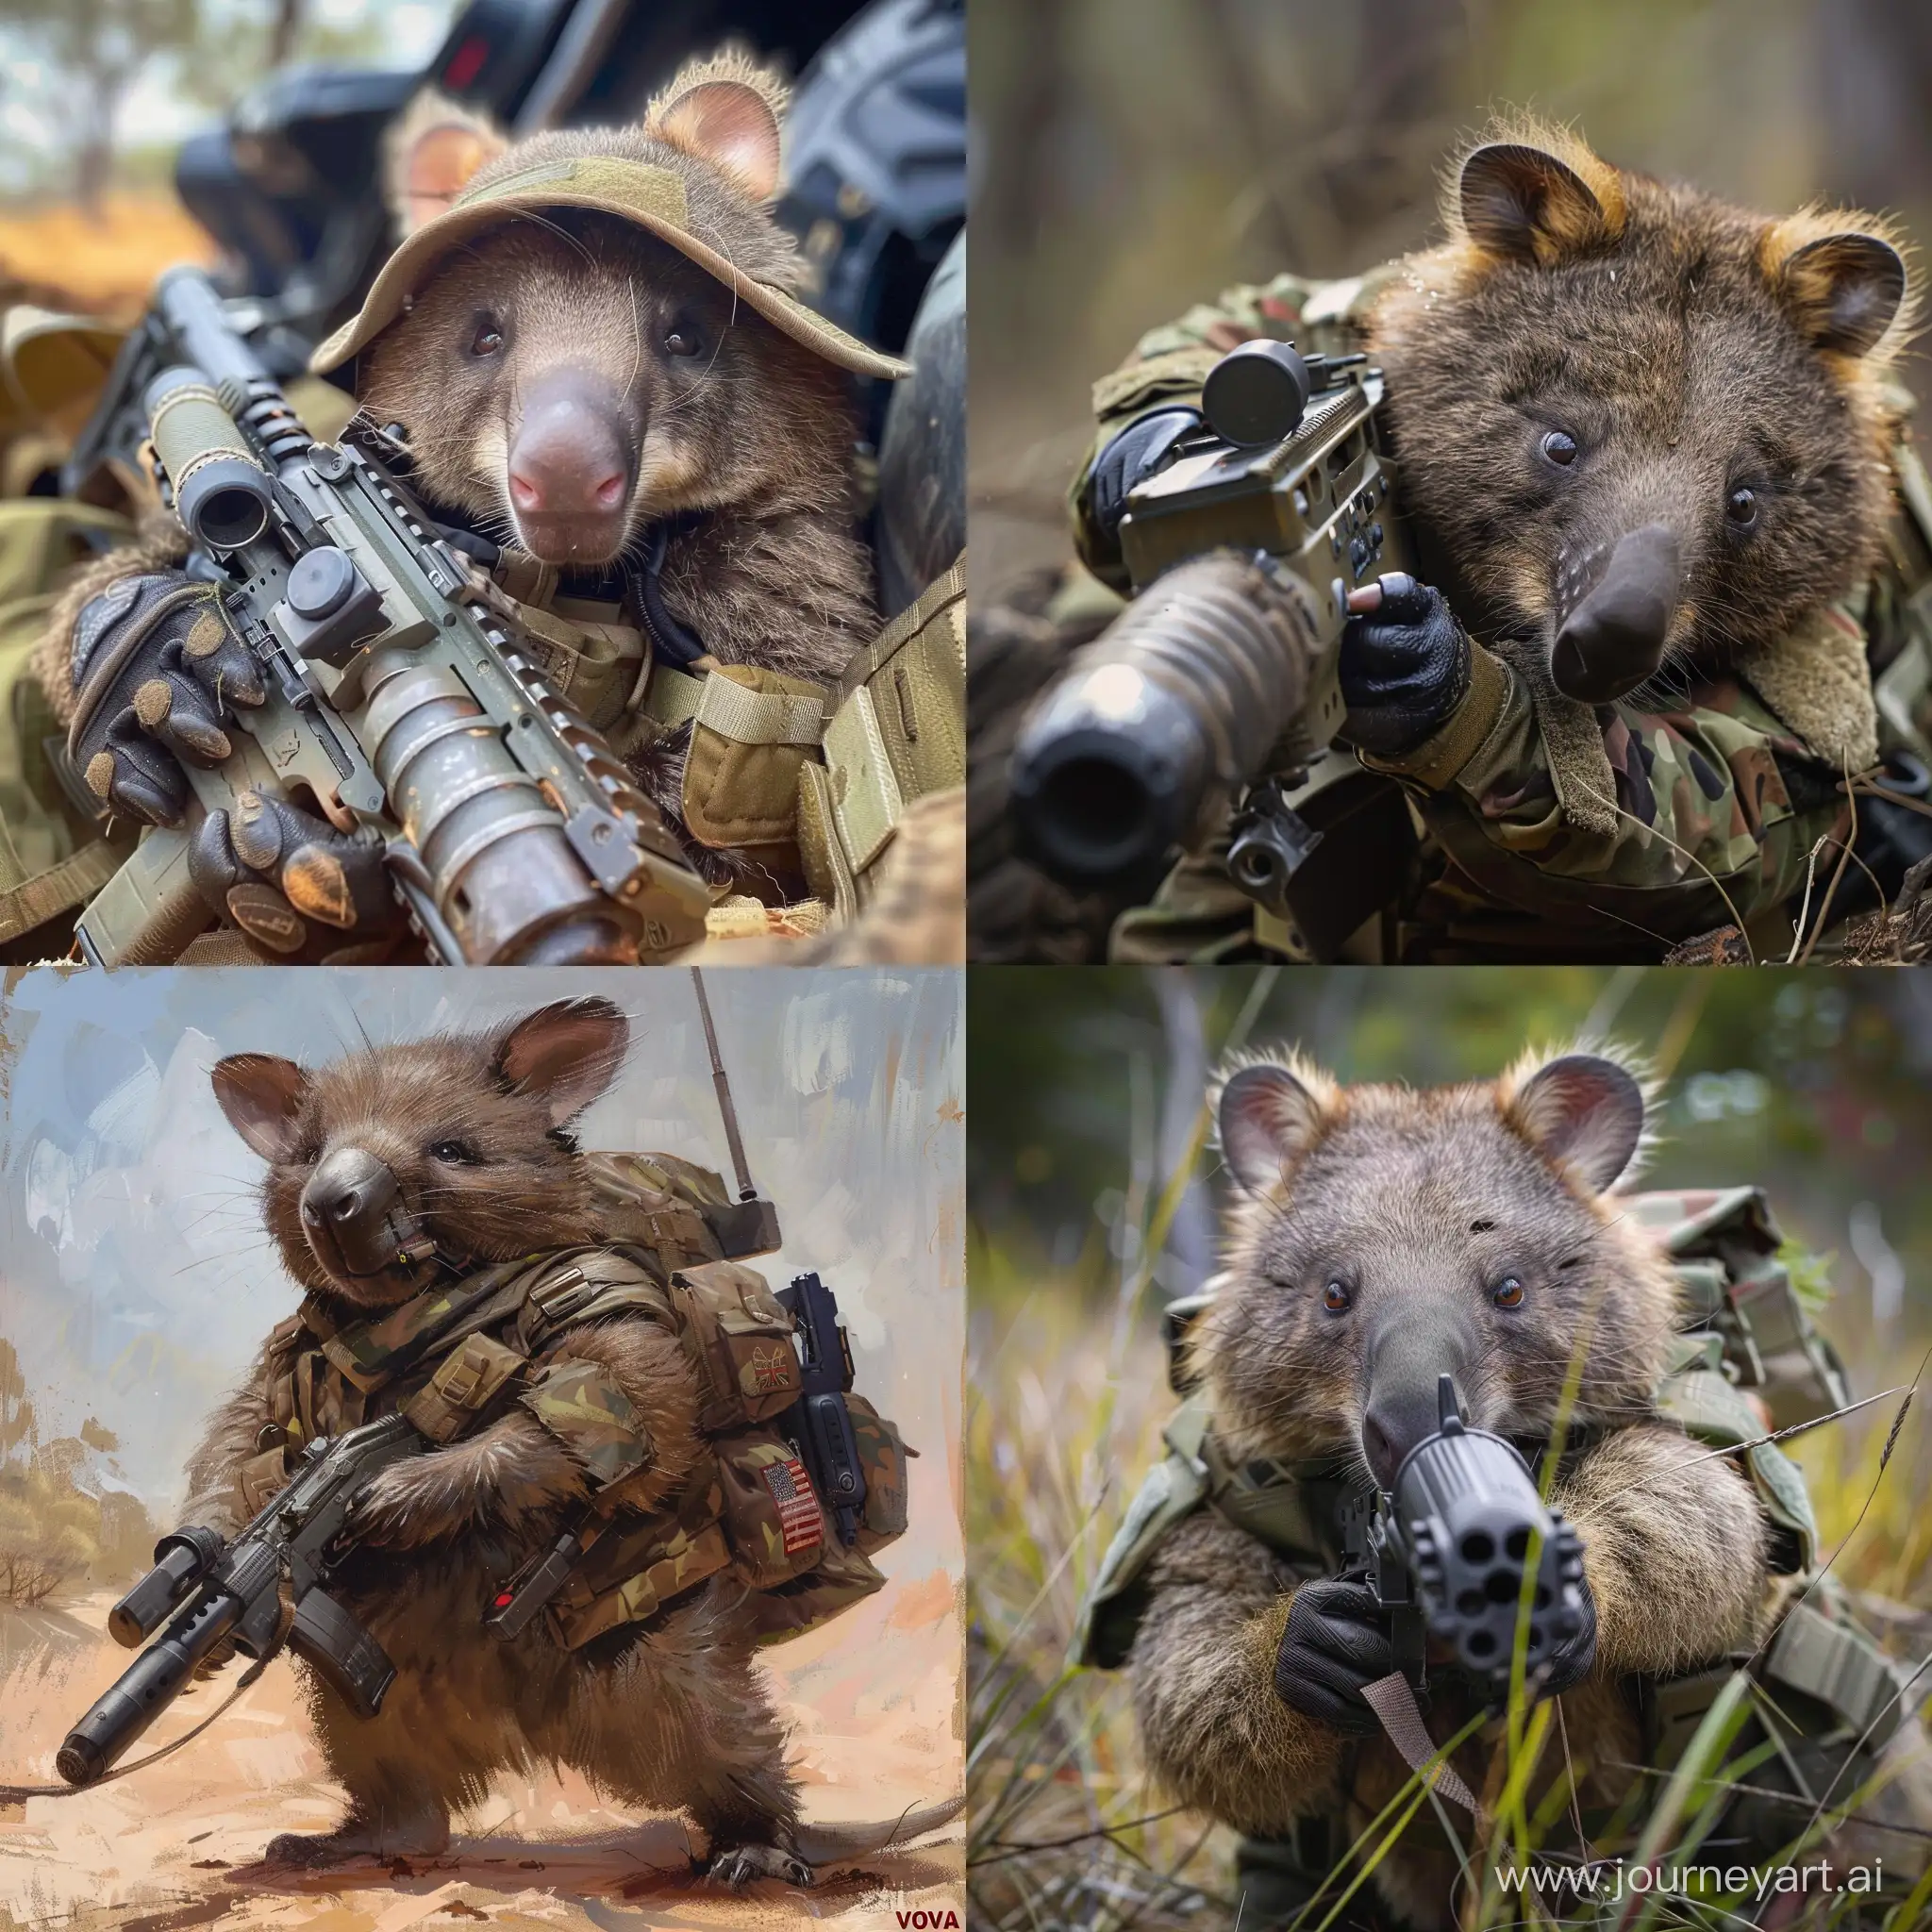 Vova says Wombat commando